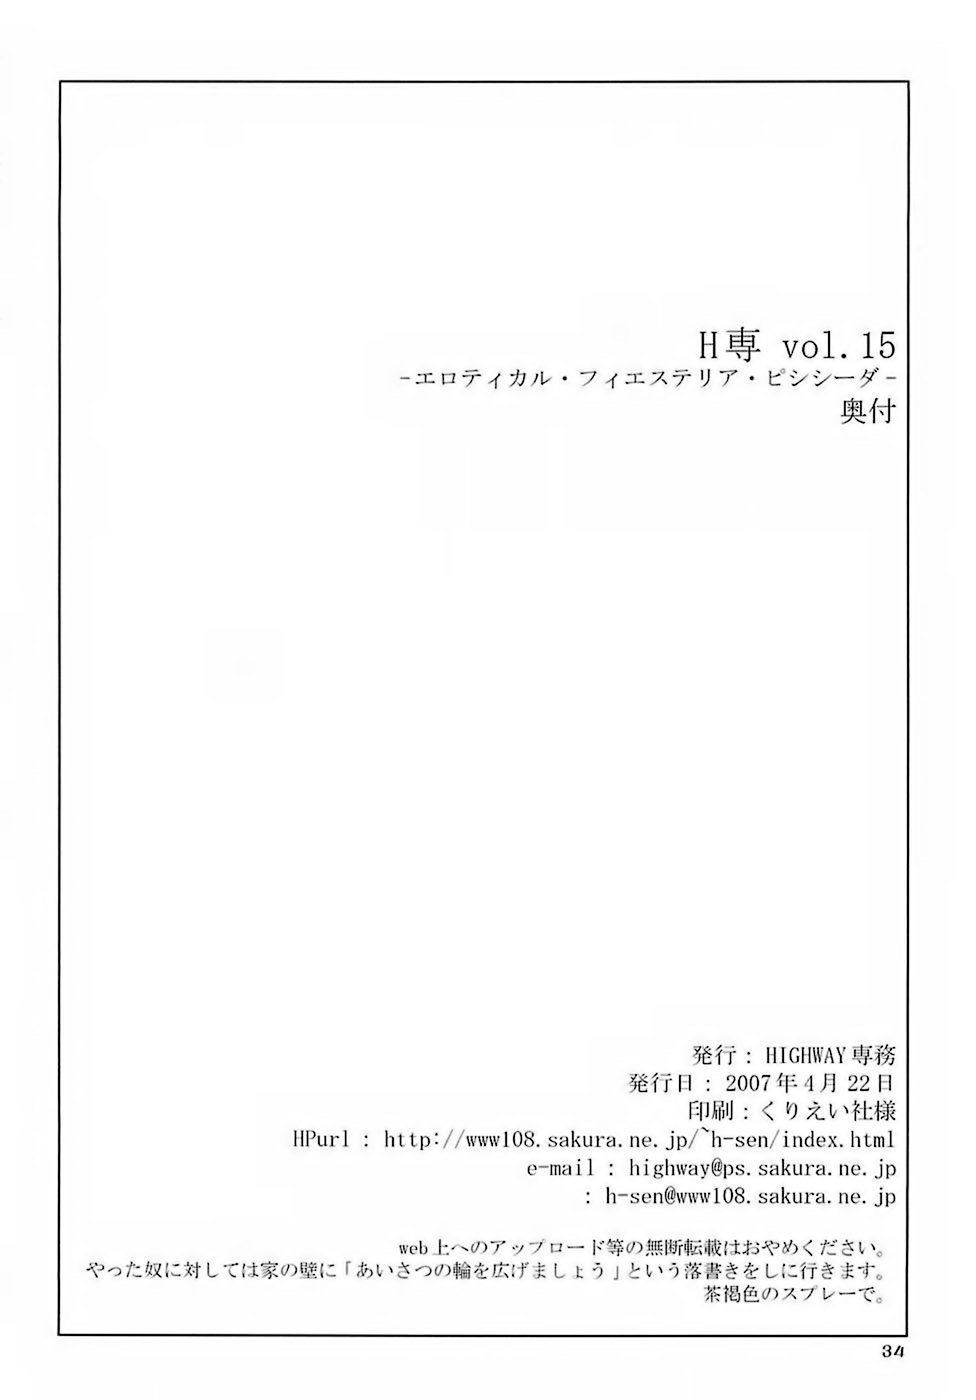 (サンクリ35) [HIGHWAY専務 (まばん, 最後尾)] H専vol. 15 -エロティカル・フィエステリア・ピシシーダ- (アルカナハート)